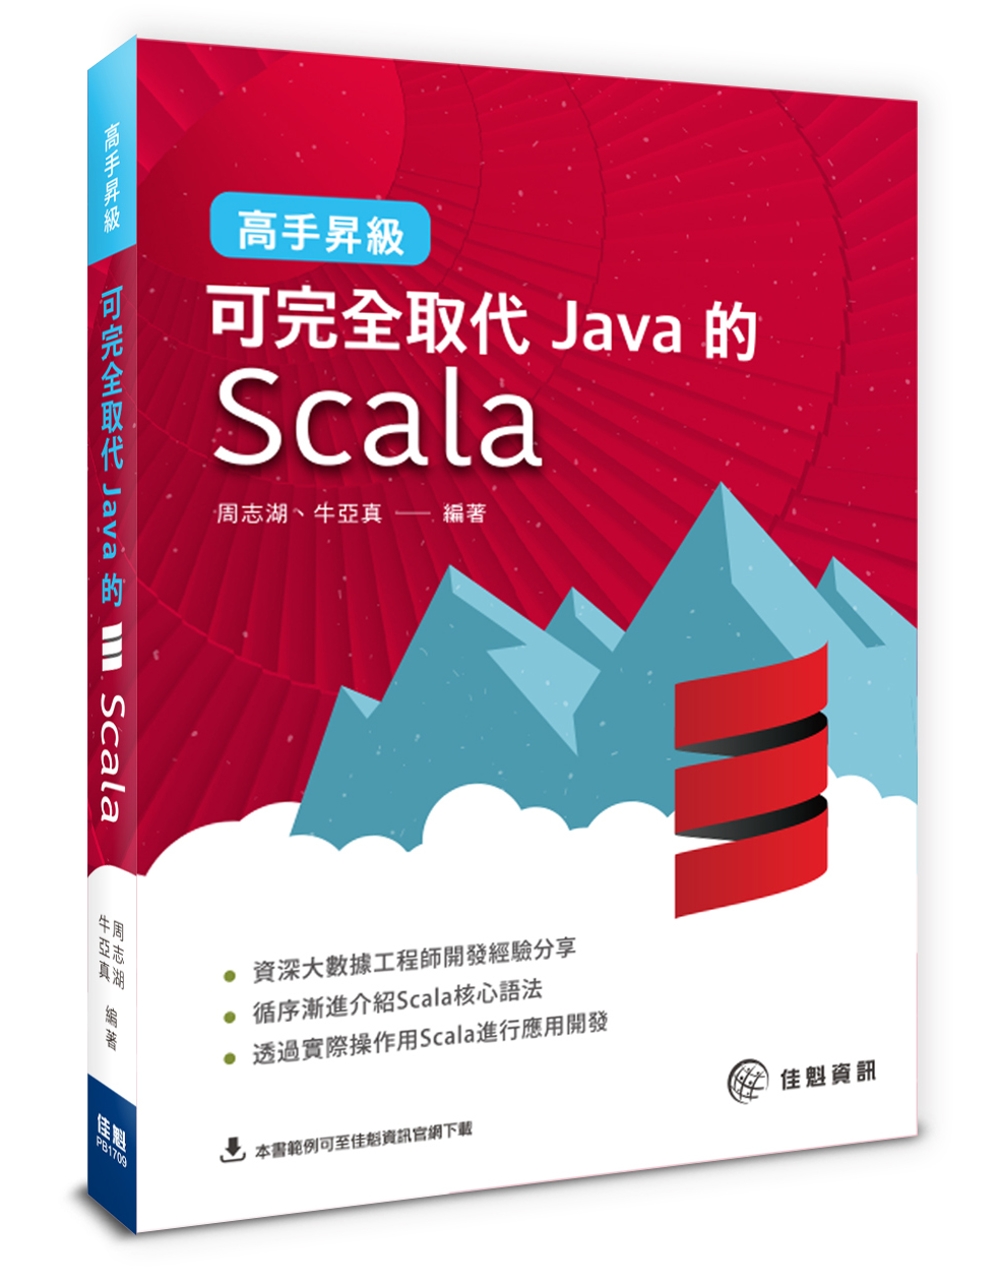 高手昇級：可完全取代Java的Scala